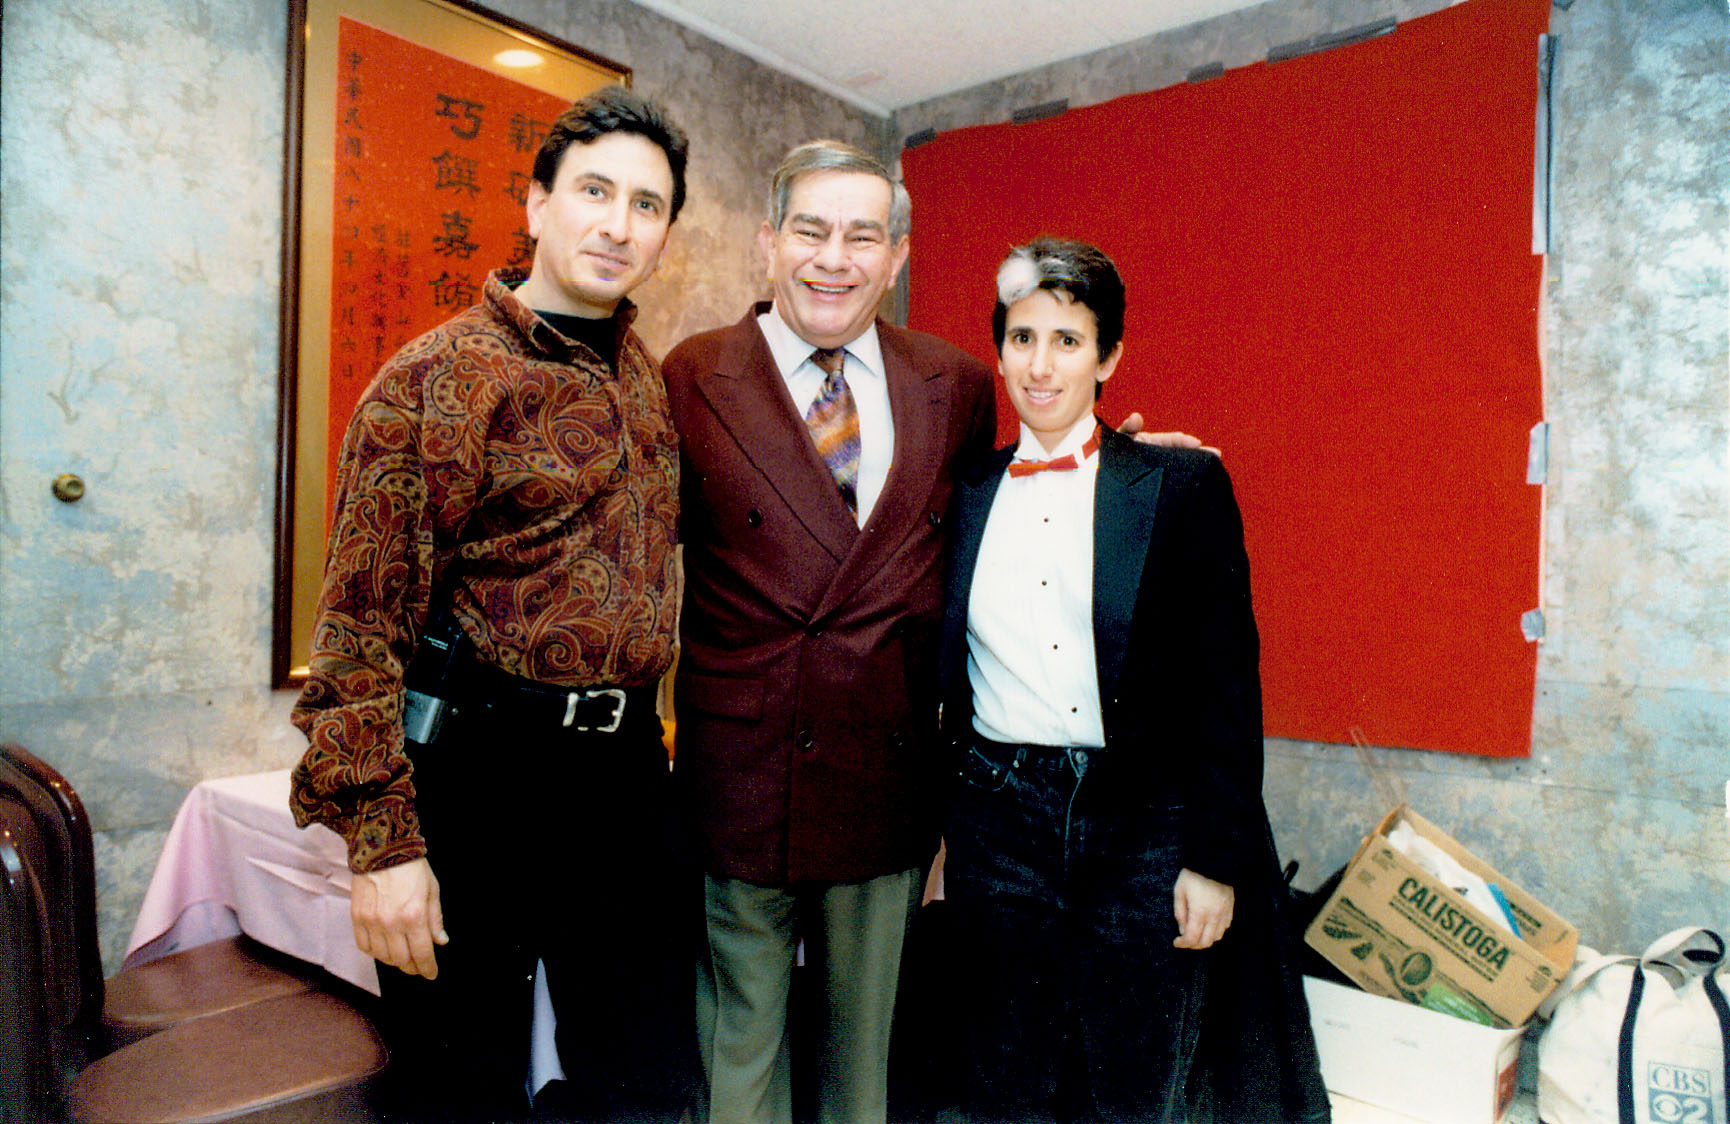 Lawrence Helman (staff), Freddie Roman, and Lisa Geduldig, 1998